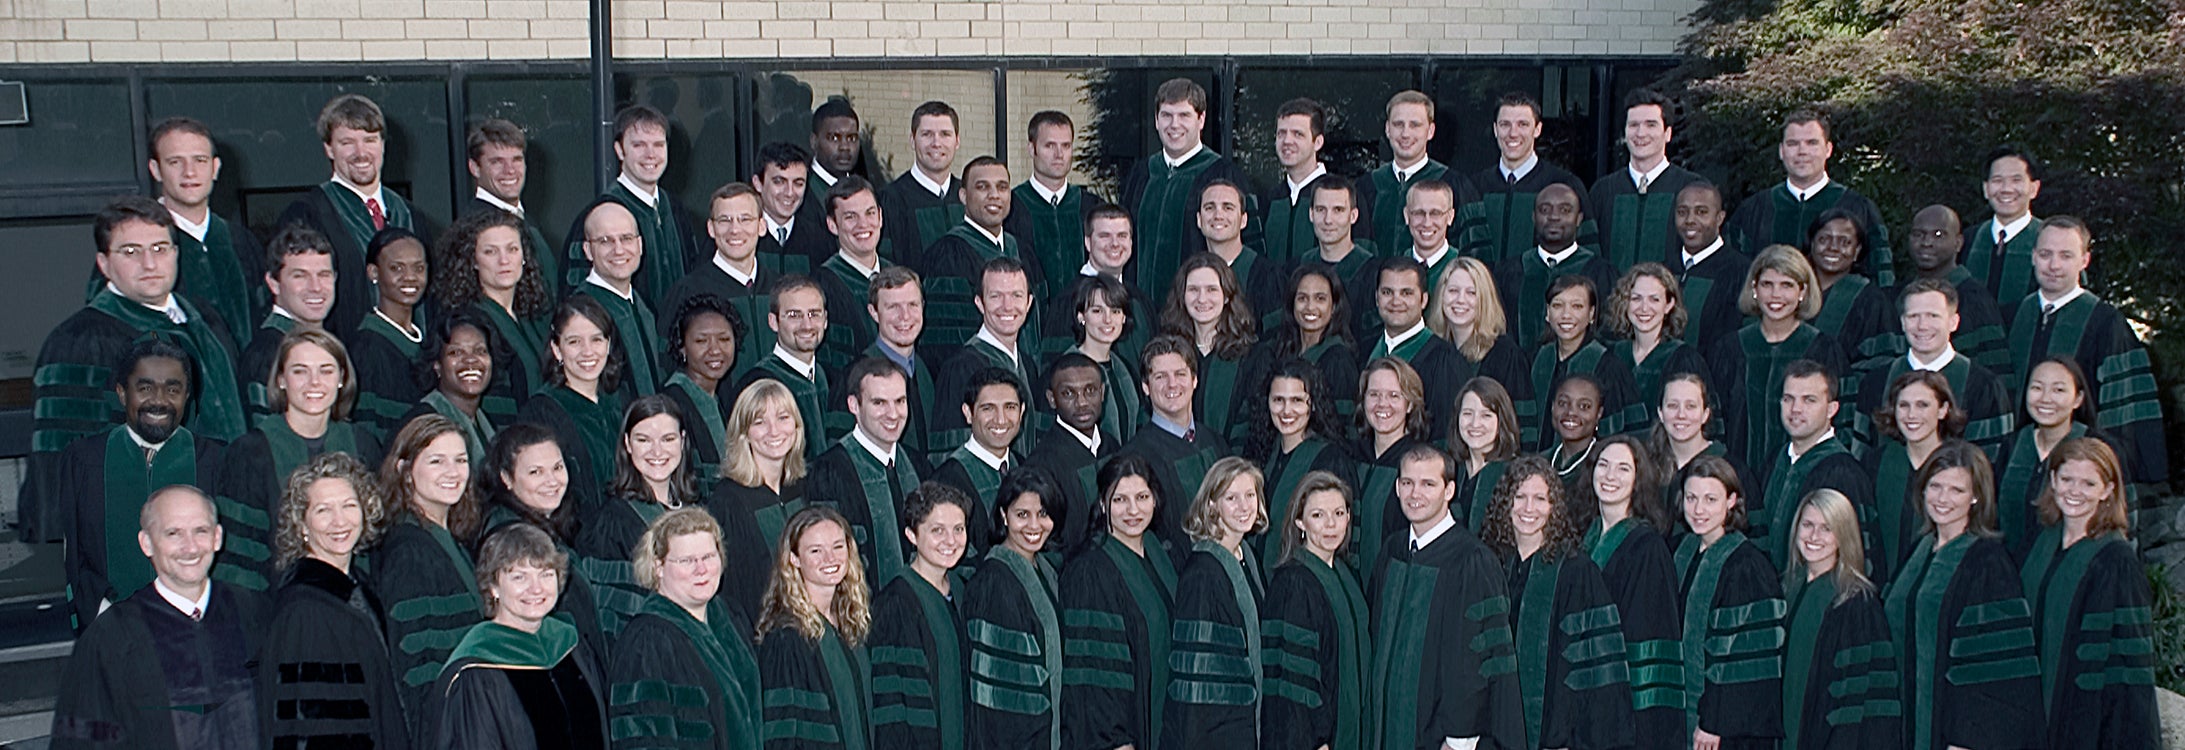 Graduates 2004